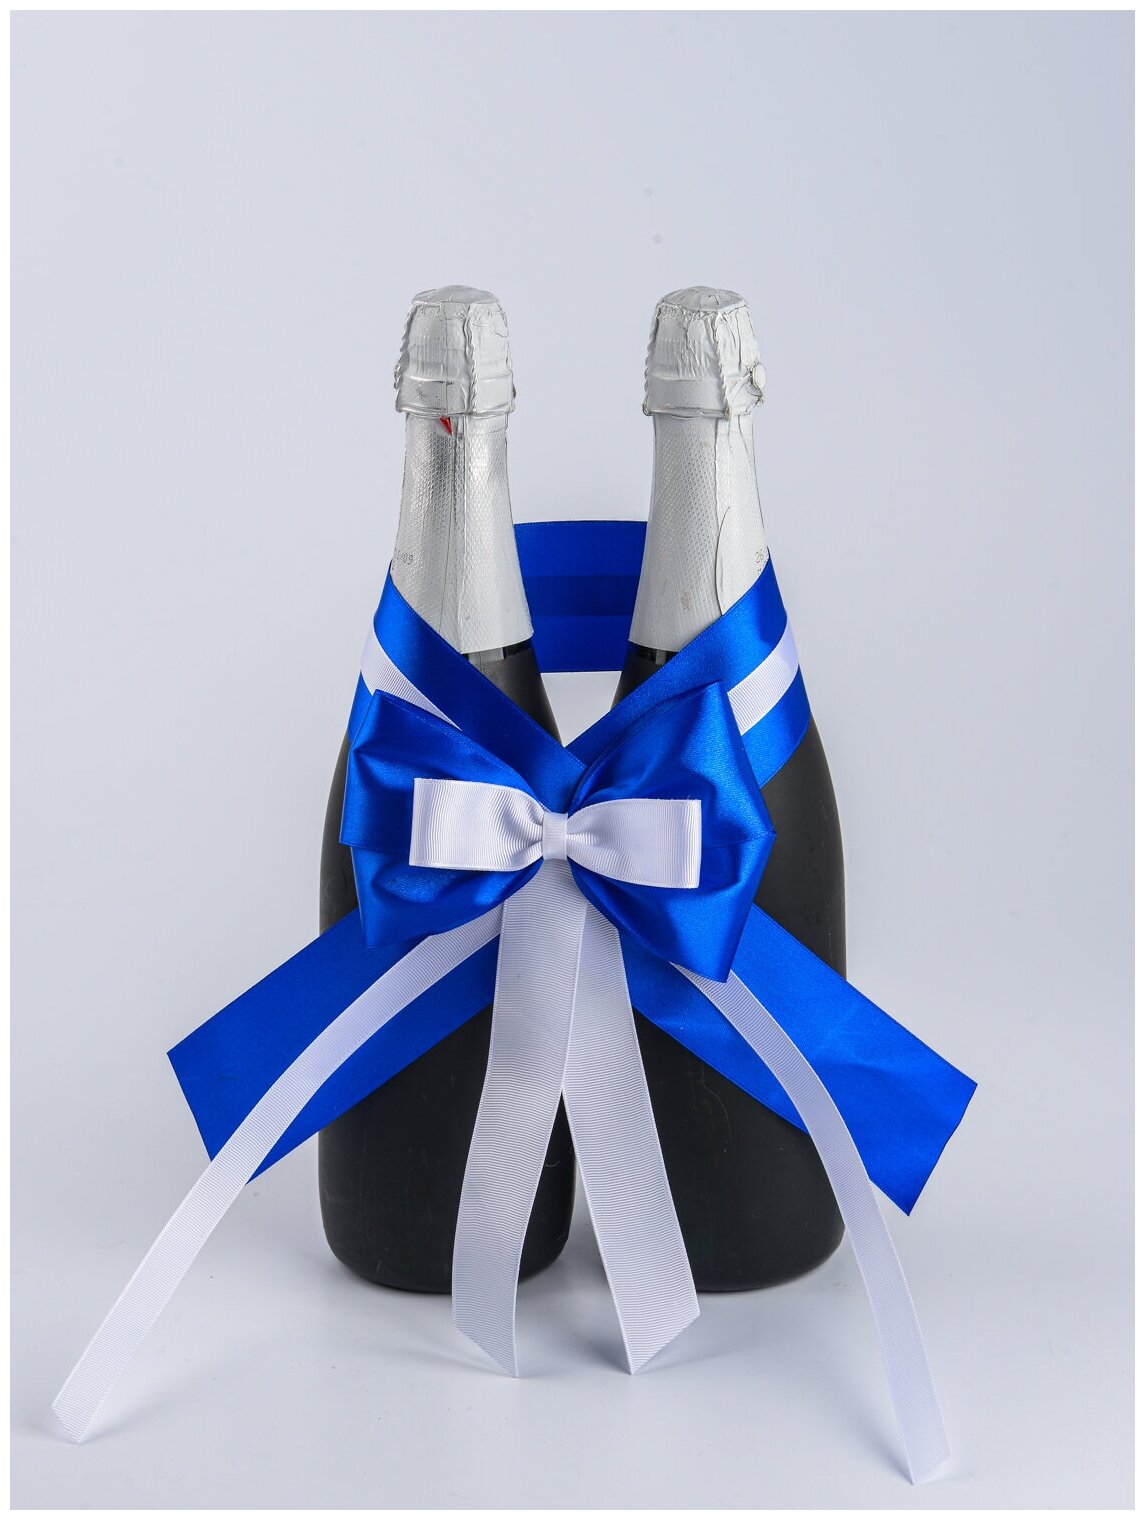 Свадебное украшение для двух бутылок шампанского молодоженов с атласным бантом и лентами в бело-синих тонах